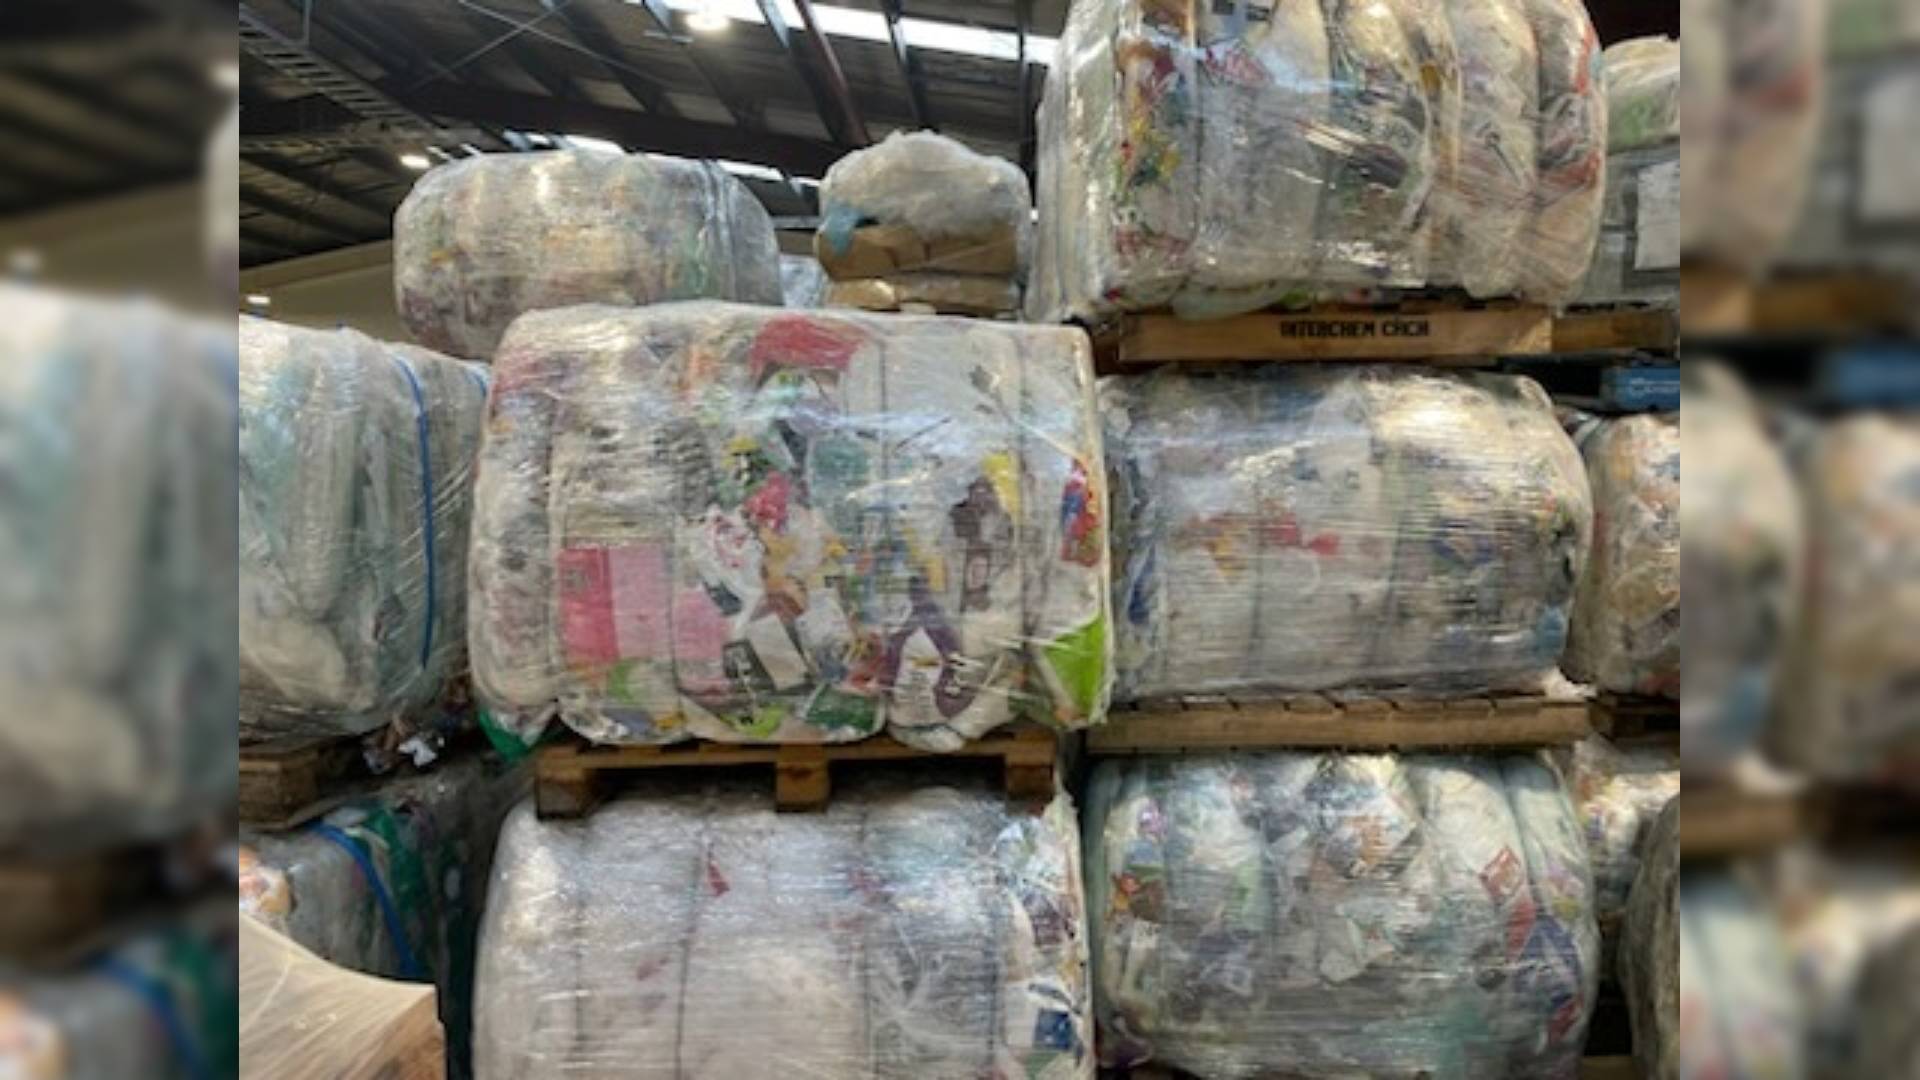 School pioneers recycling scheme for plastics - NZ Herald